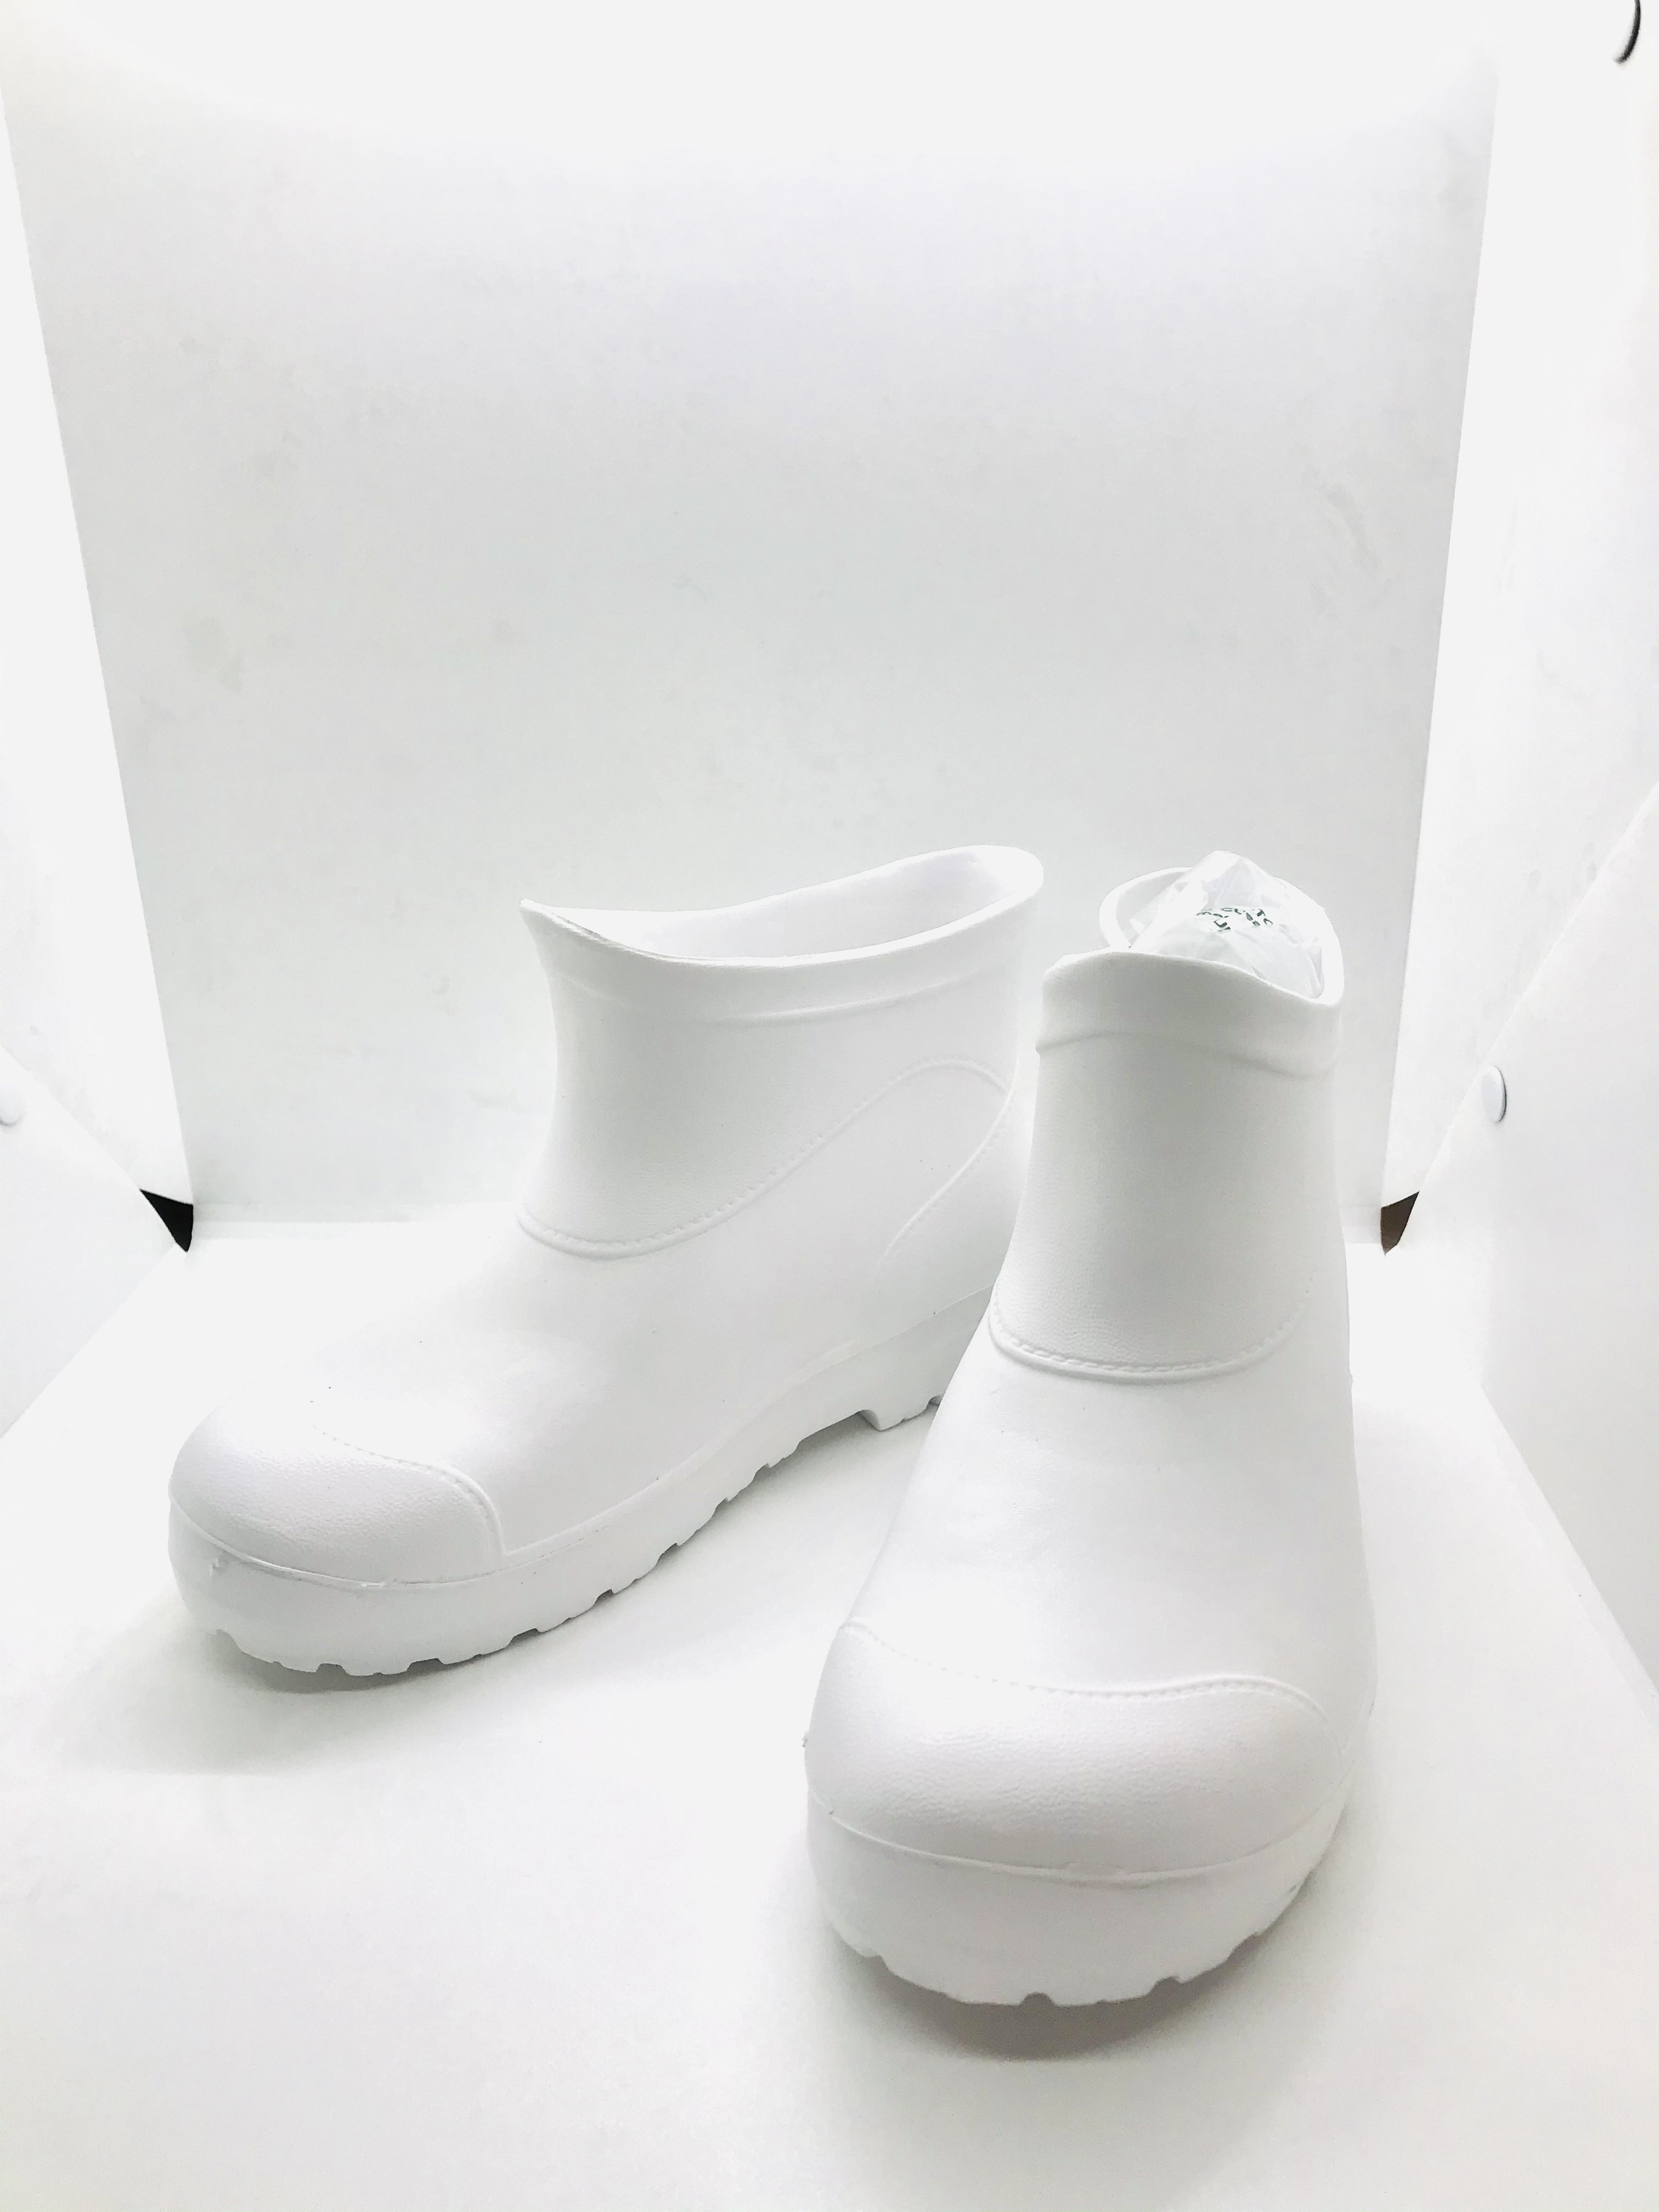 รองเท้าบู้ทเบา สบายเท้า สะอาด นิ่ม ปลอดภัย สะอาด M-888-1 ทำจาก EVA  9 นิ้ว สีขาว...